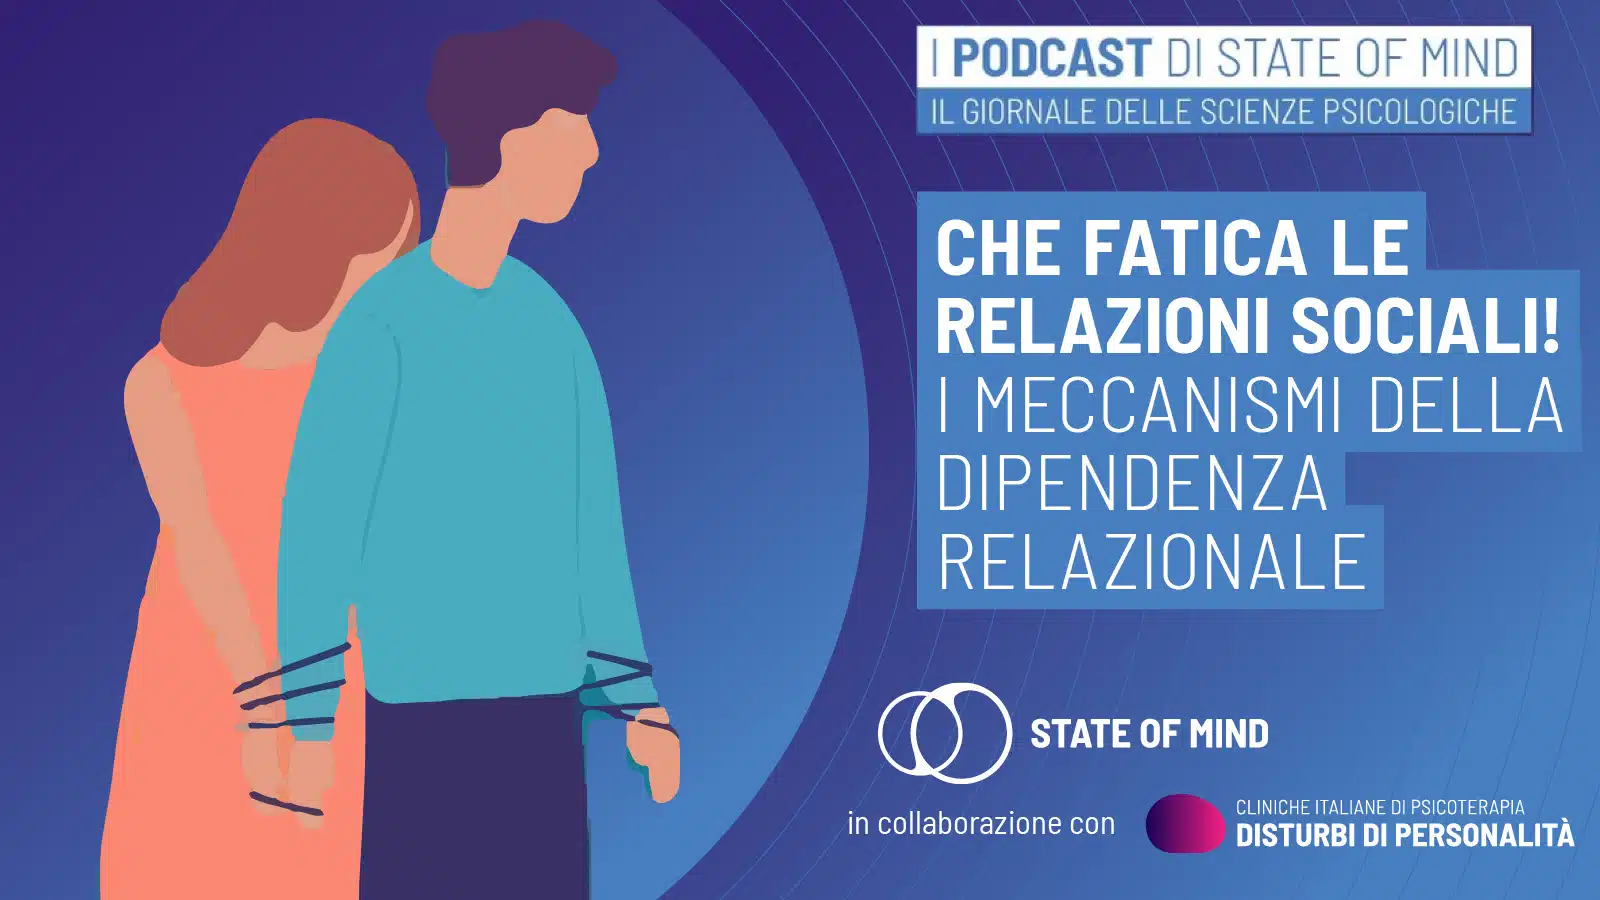 meccanismi della dipendenza relazionale - Podcast State of Mind